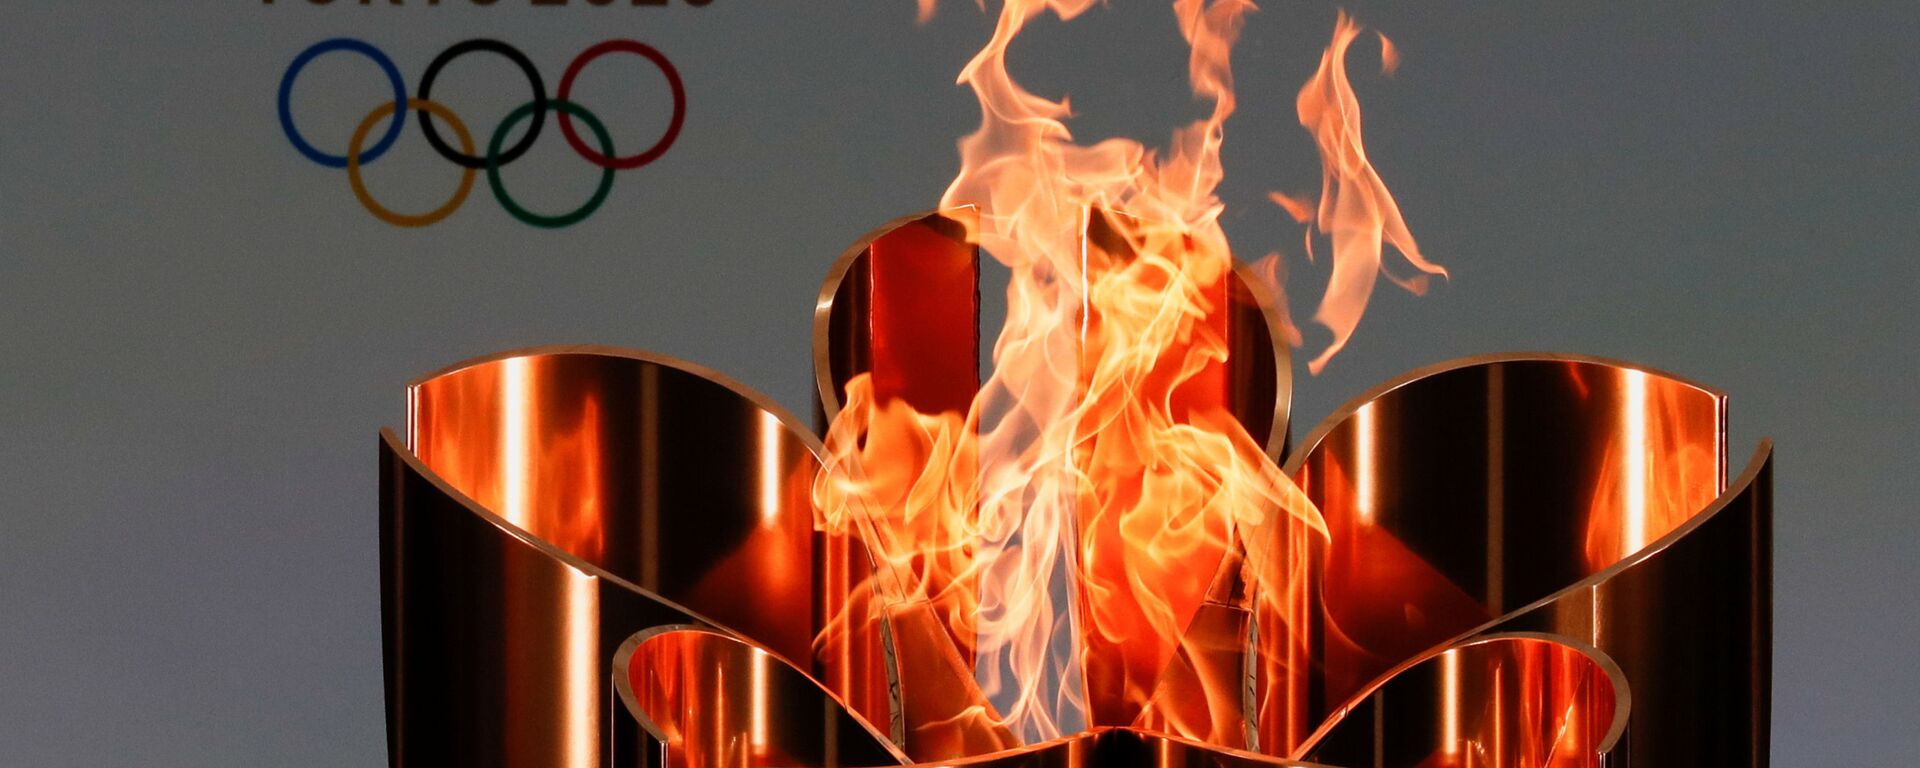 Олимпийский огонь во время эстафеты Олимпийского огня в Токио-2020 в префектуре Фукусима, Япония - Sputnik Таджикистан, 1920, 28.06.2021